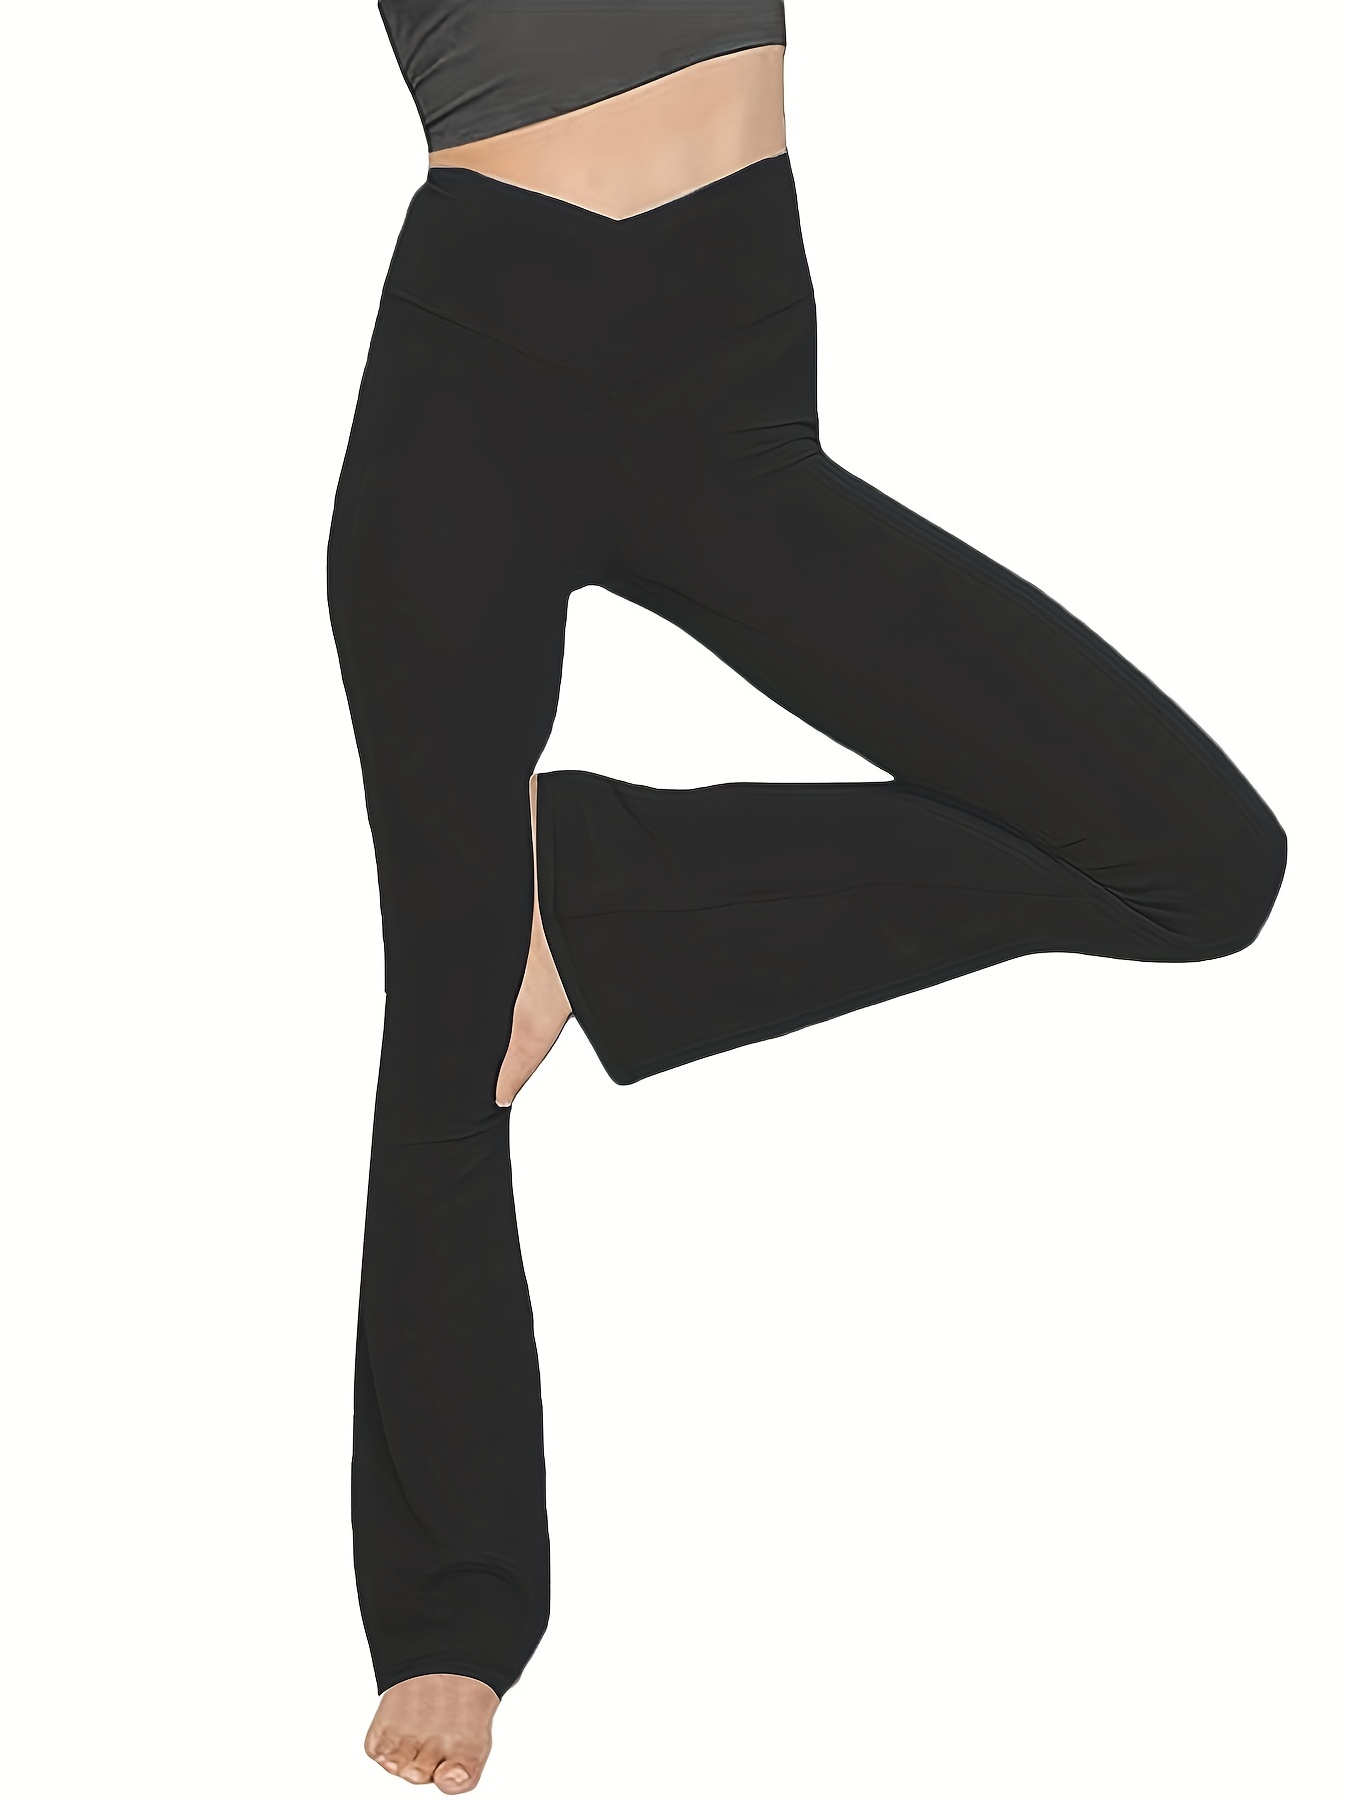 Scyoekwg Women's Yoga Pants Flare Leggings High Waist V Cross